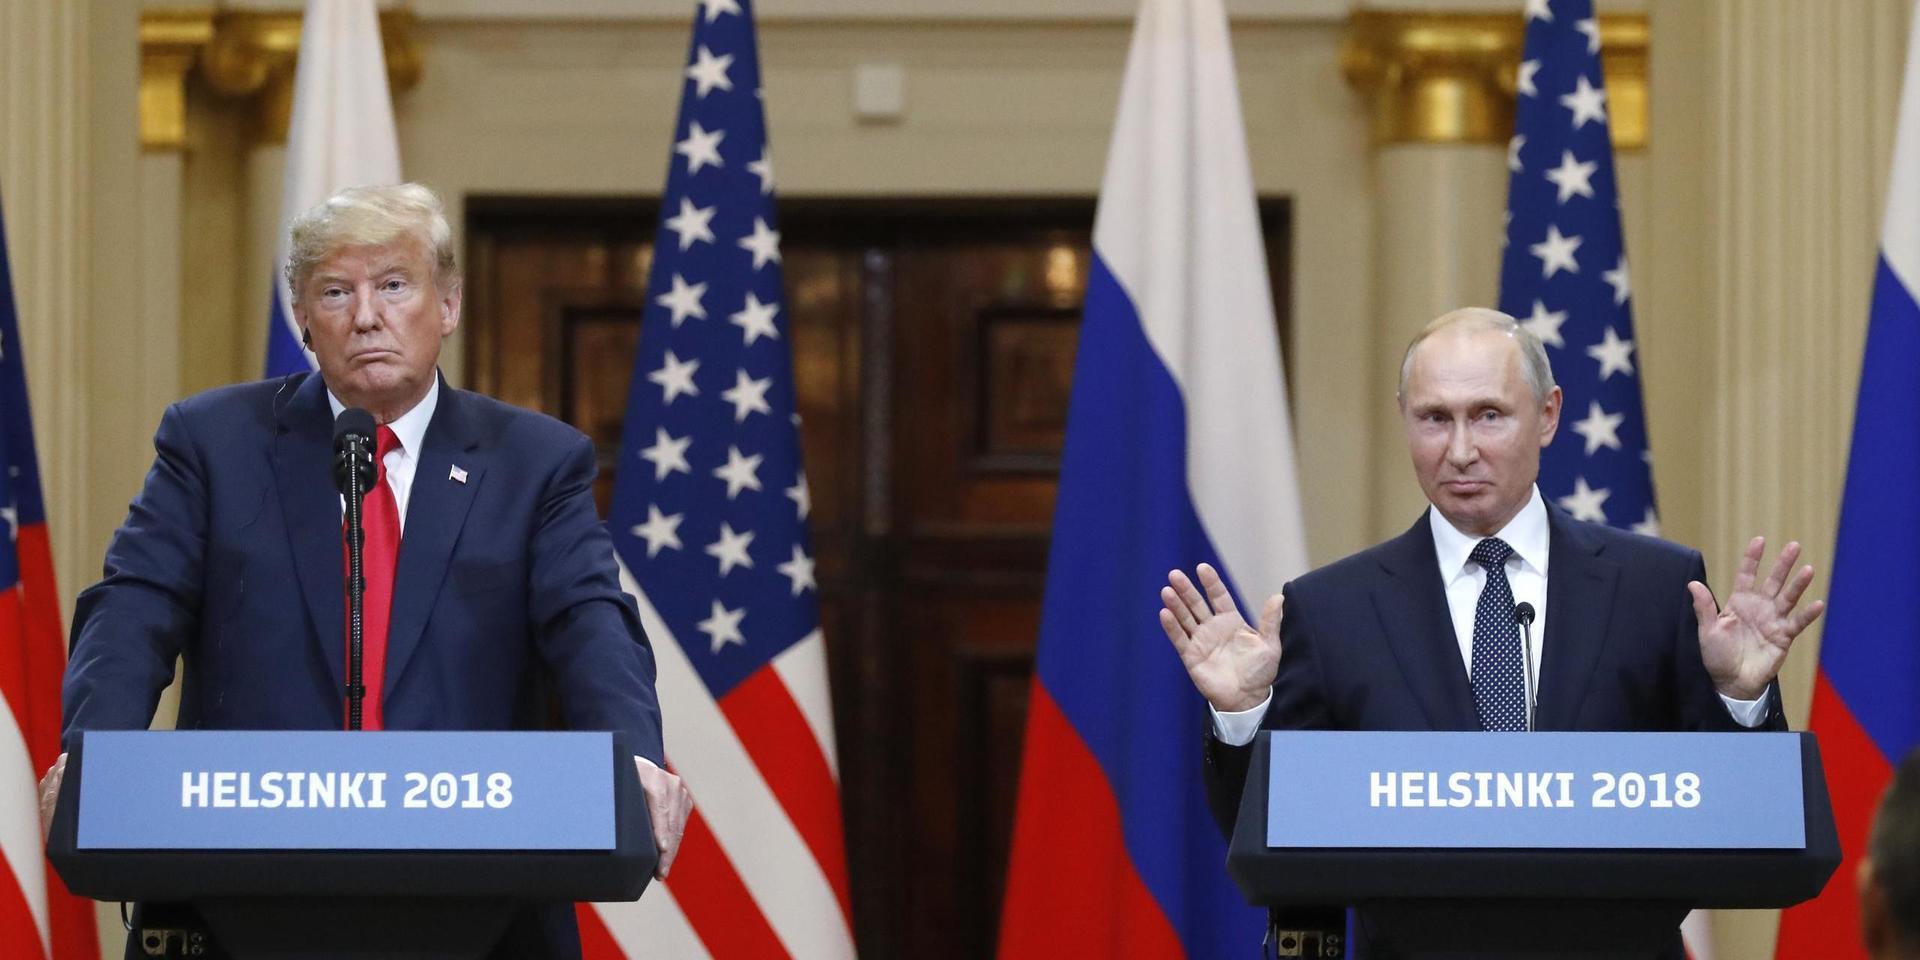 Donald Trump och Vladimir Putin möttes i Helsingfors 2018